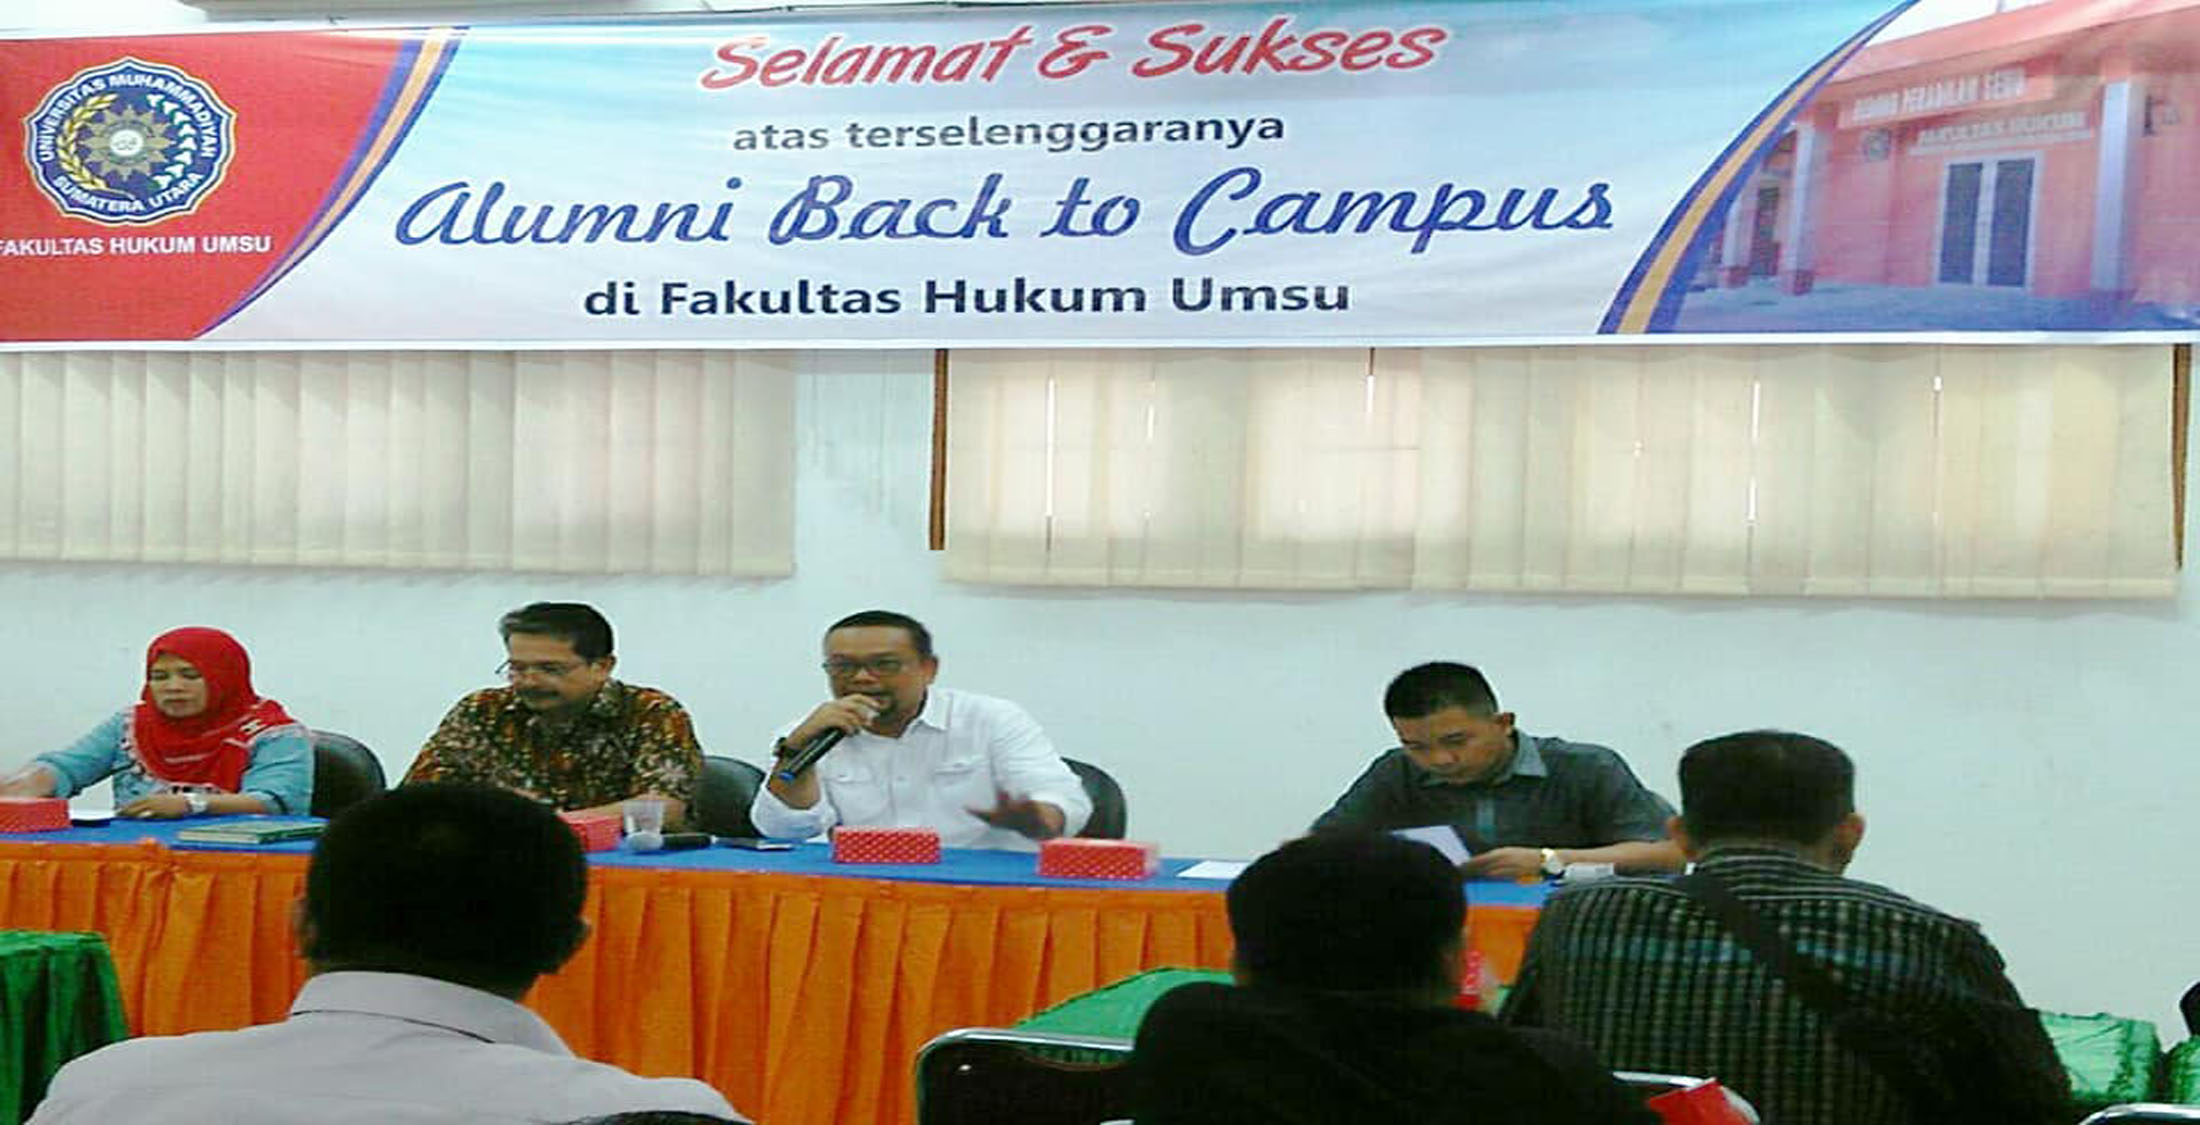 Pertemuan Alumni Fakultas Hukum UMSU Berjalan Lancar